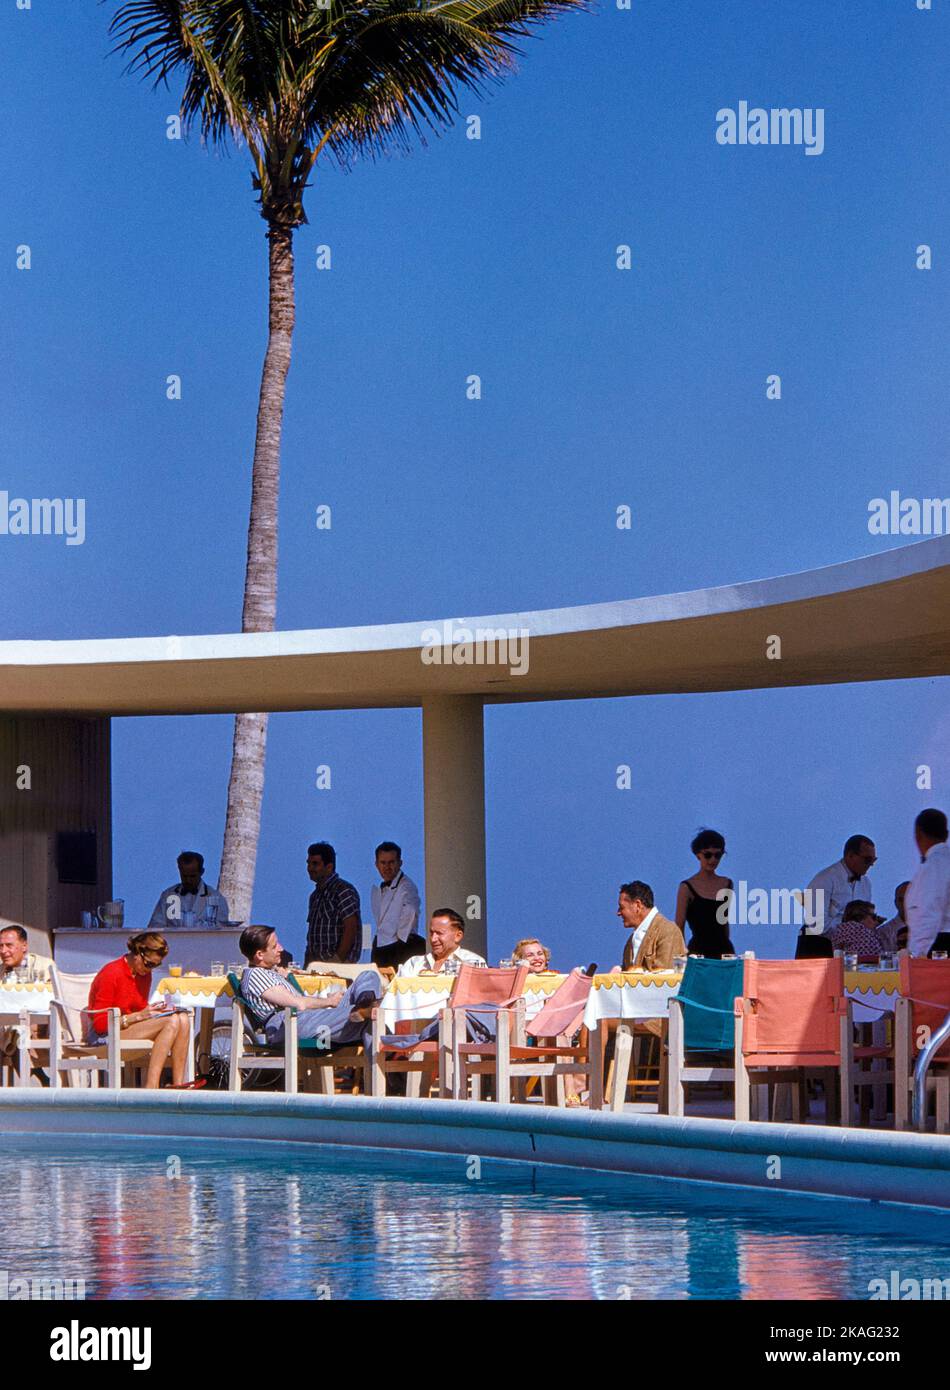 Ristorante a bordo piscina, la Coquille Club, Palm Beach, Florida, Stati Uniti Toni Frissell Collection, dicembre 1954 Foto Stock